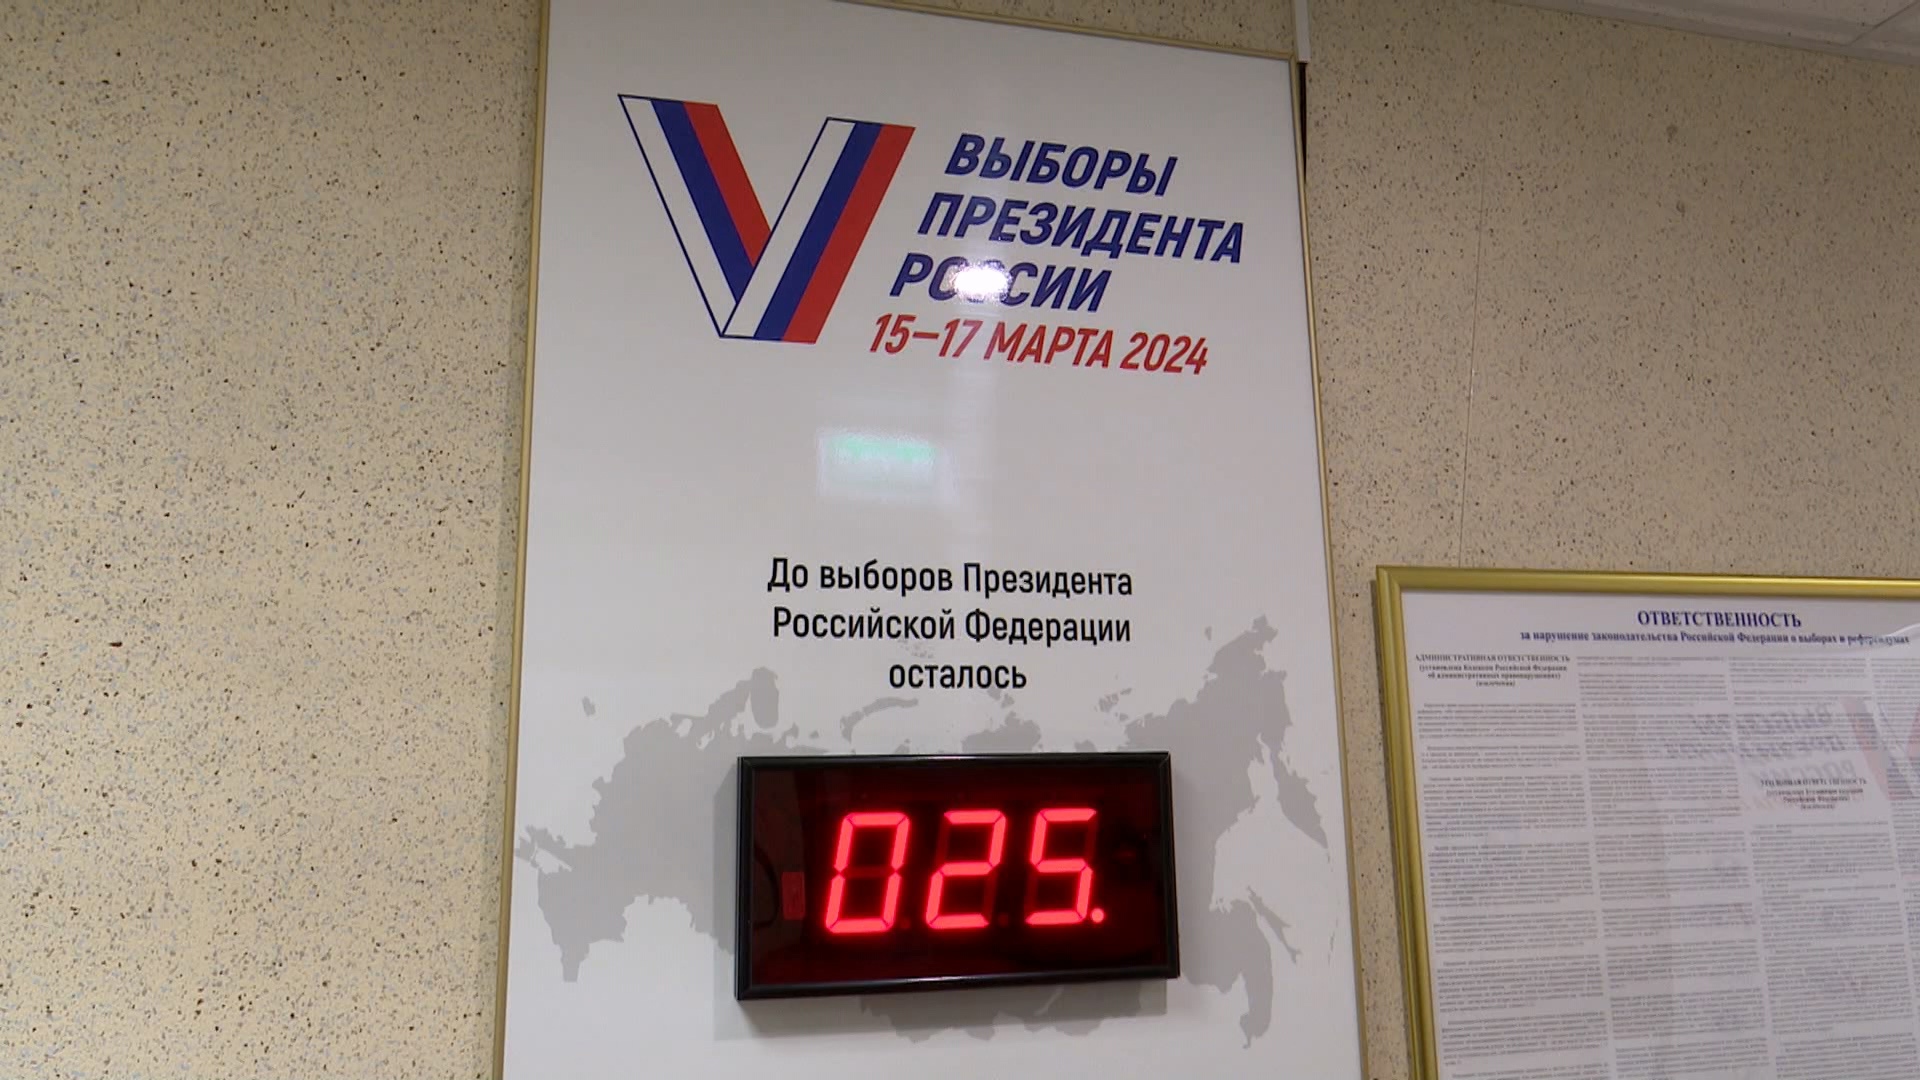 Жители Челябинской области примут участие в дистанционном электронном голосовании